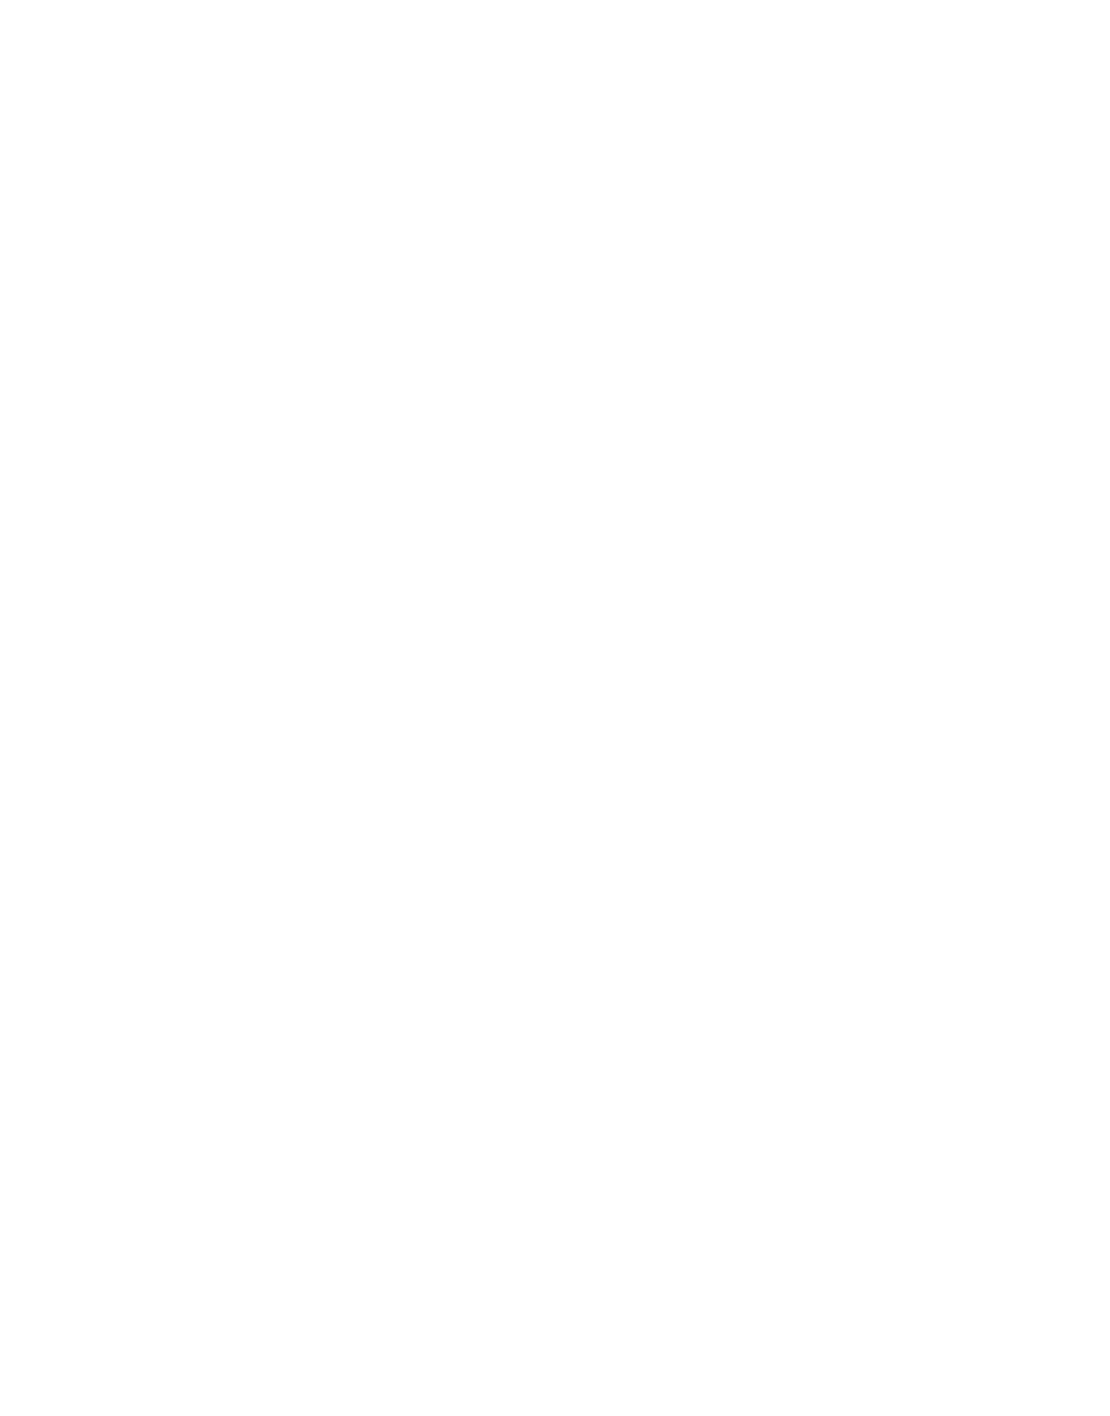 Баурджан Бисмильдин, Untitled, 2019, алюкобондтағы латексті мөр, 100 x 80 см, 39 x 31 инч, 5-тен 1 + 1 AP